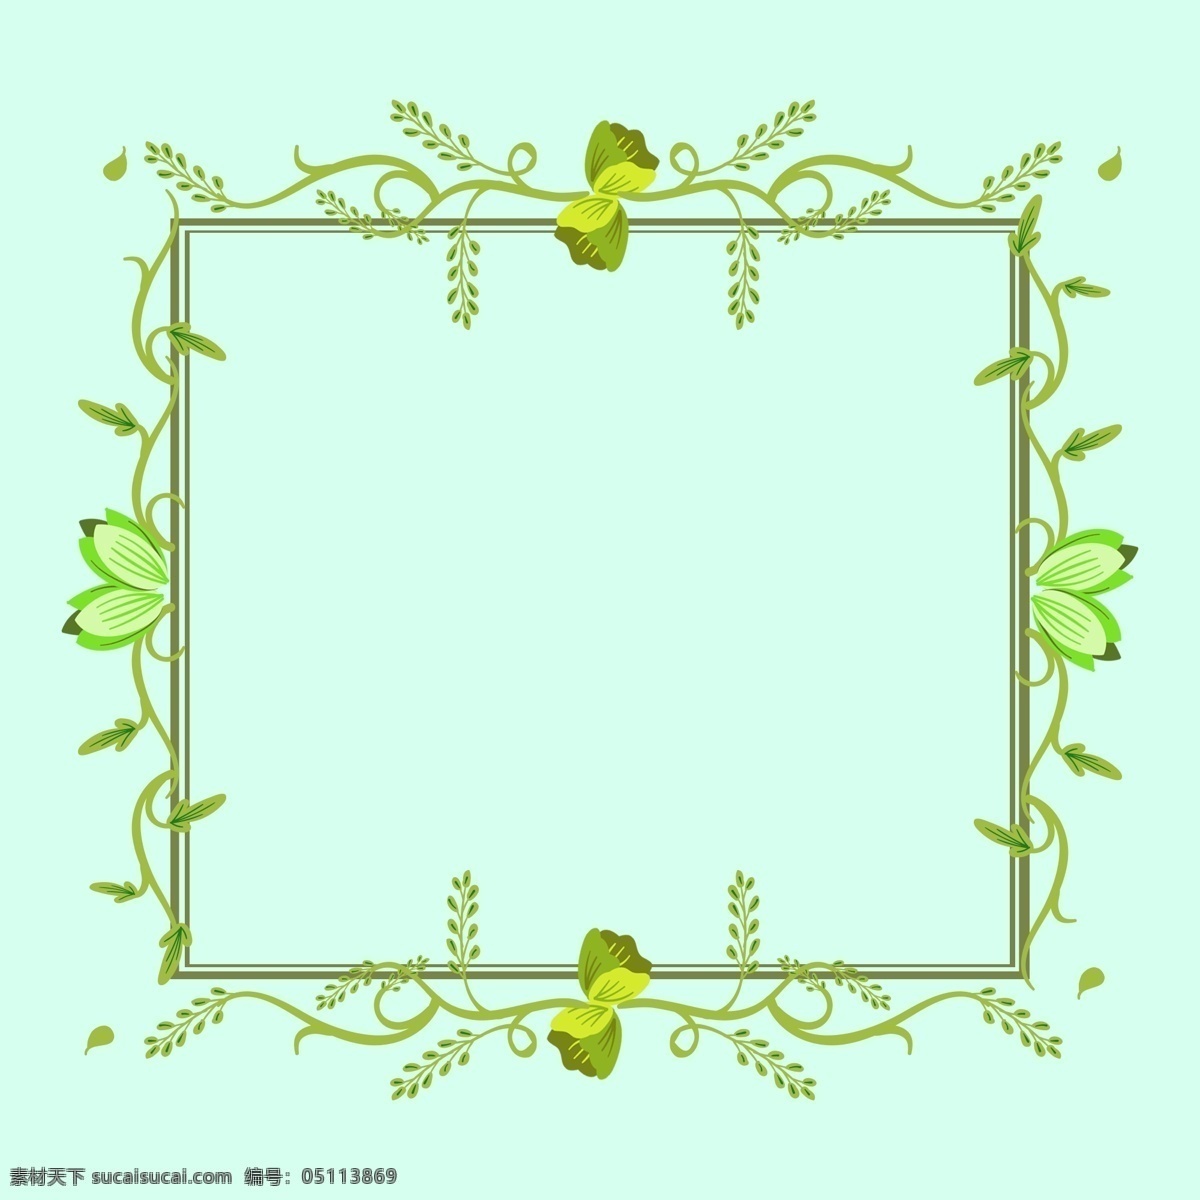 手绘 图腾 框架 树叶图腾框架 植物边框纹理 树叶 素雅 花纹 边框 淡雅小清新 绿色简约装饰